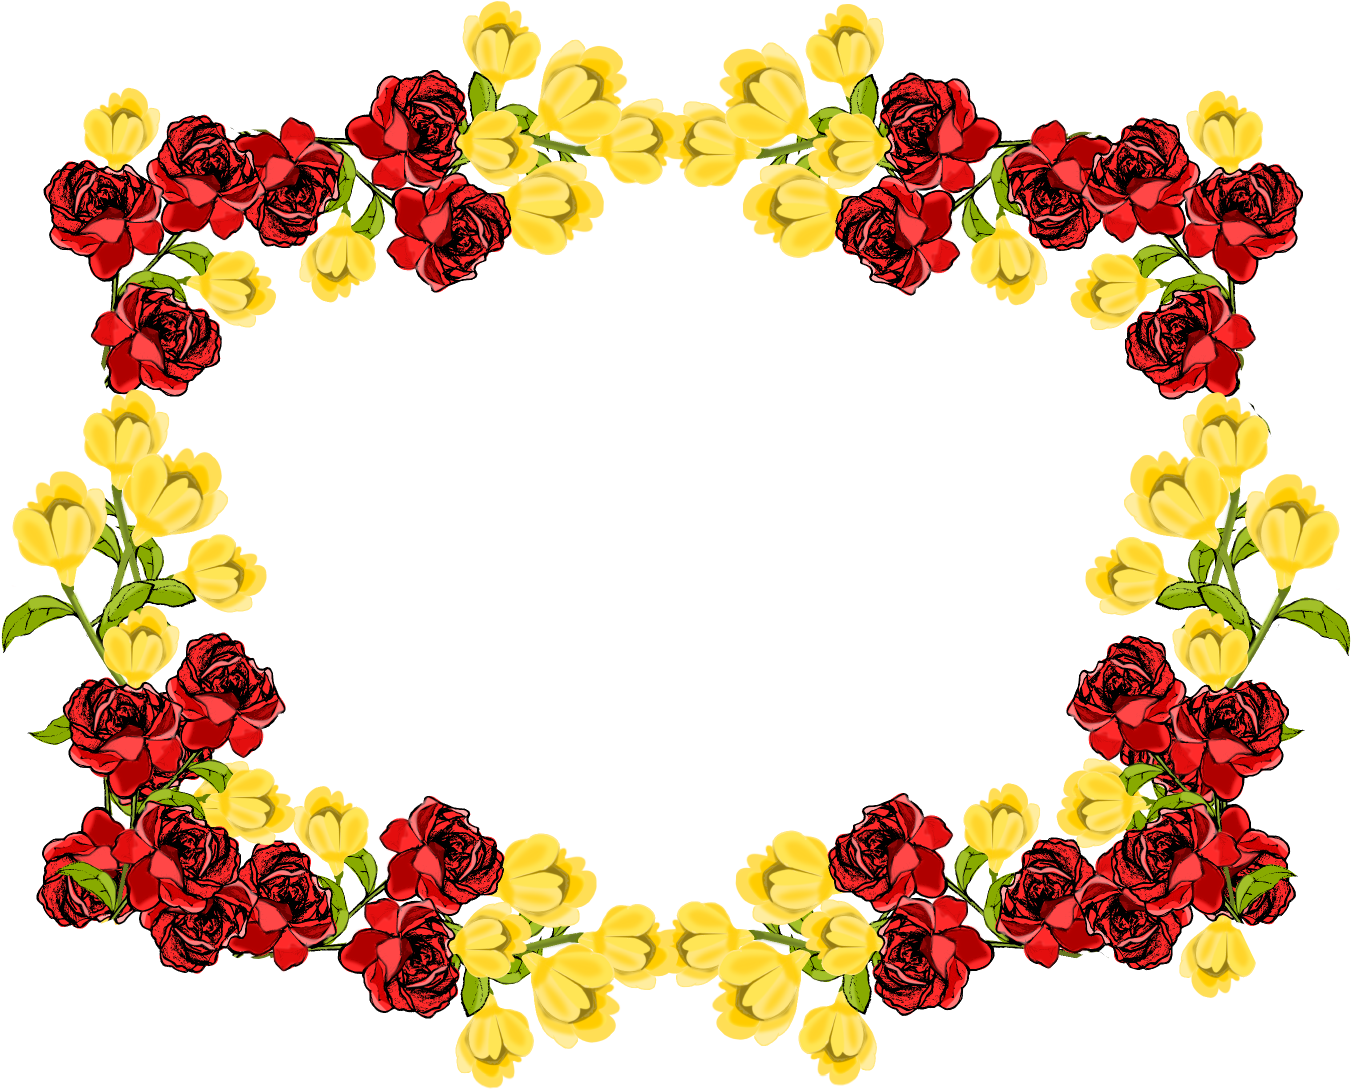 Floral Rose Border Free Download Image PNG Image